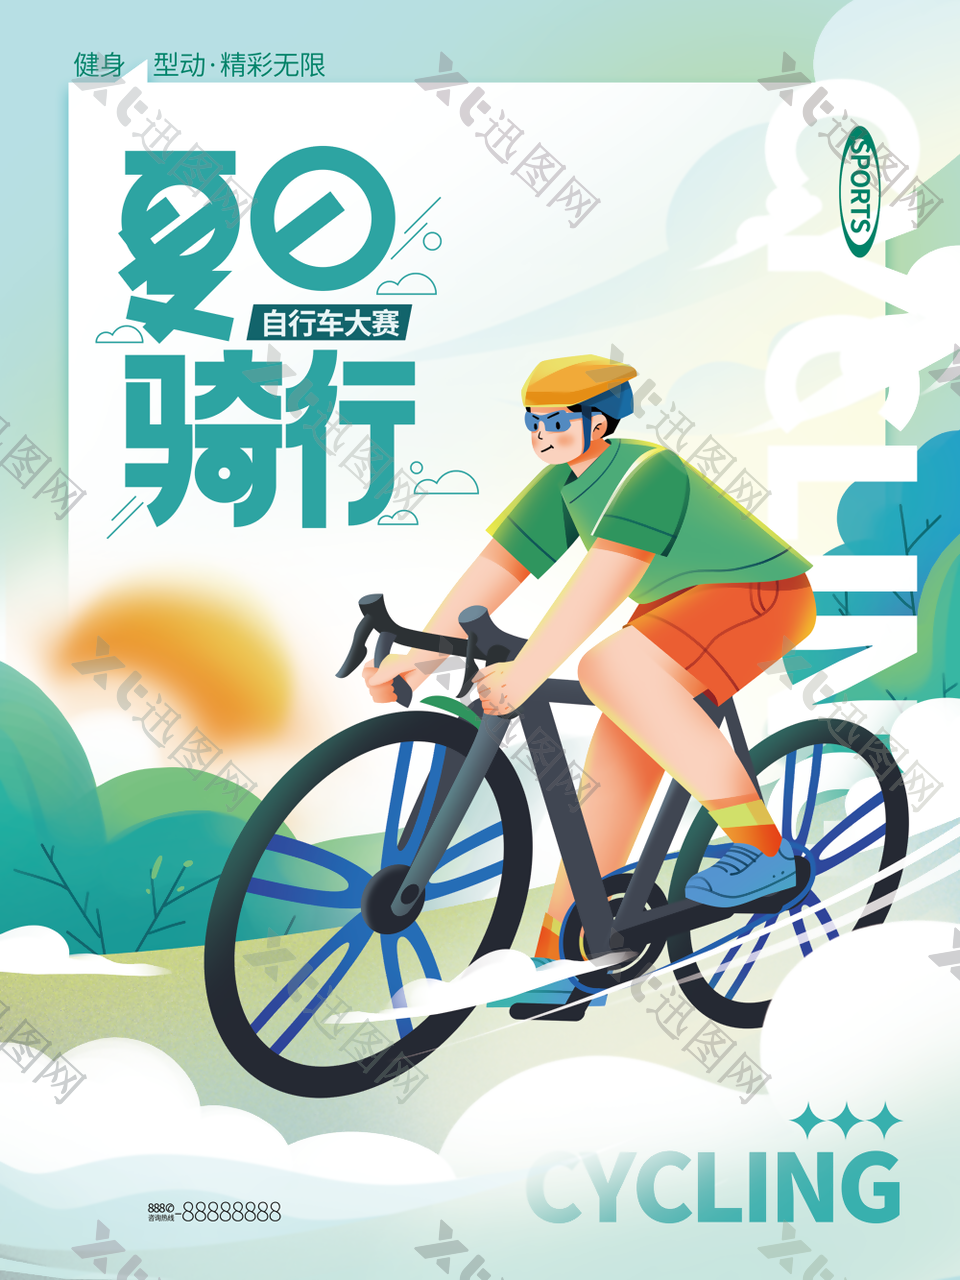 世界自行车大赛环保低碳宣传海报